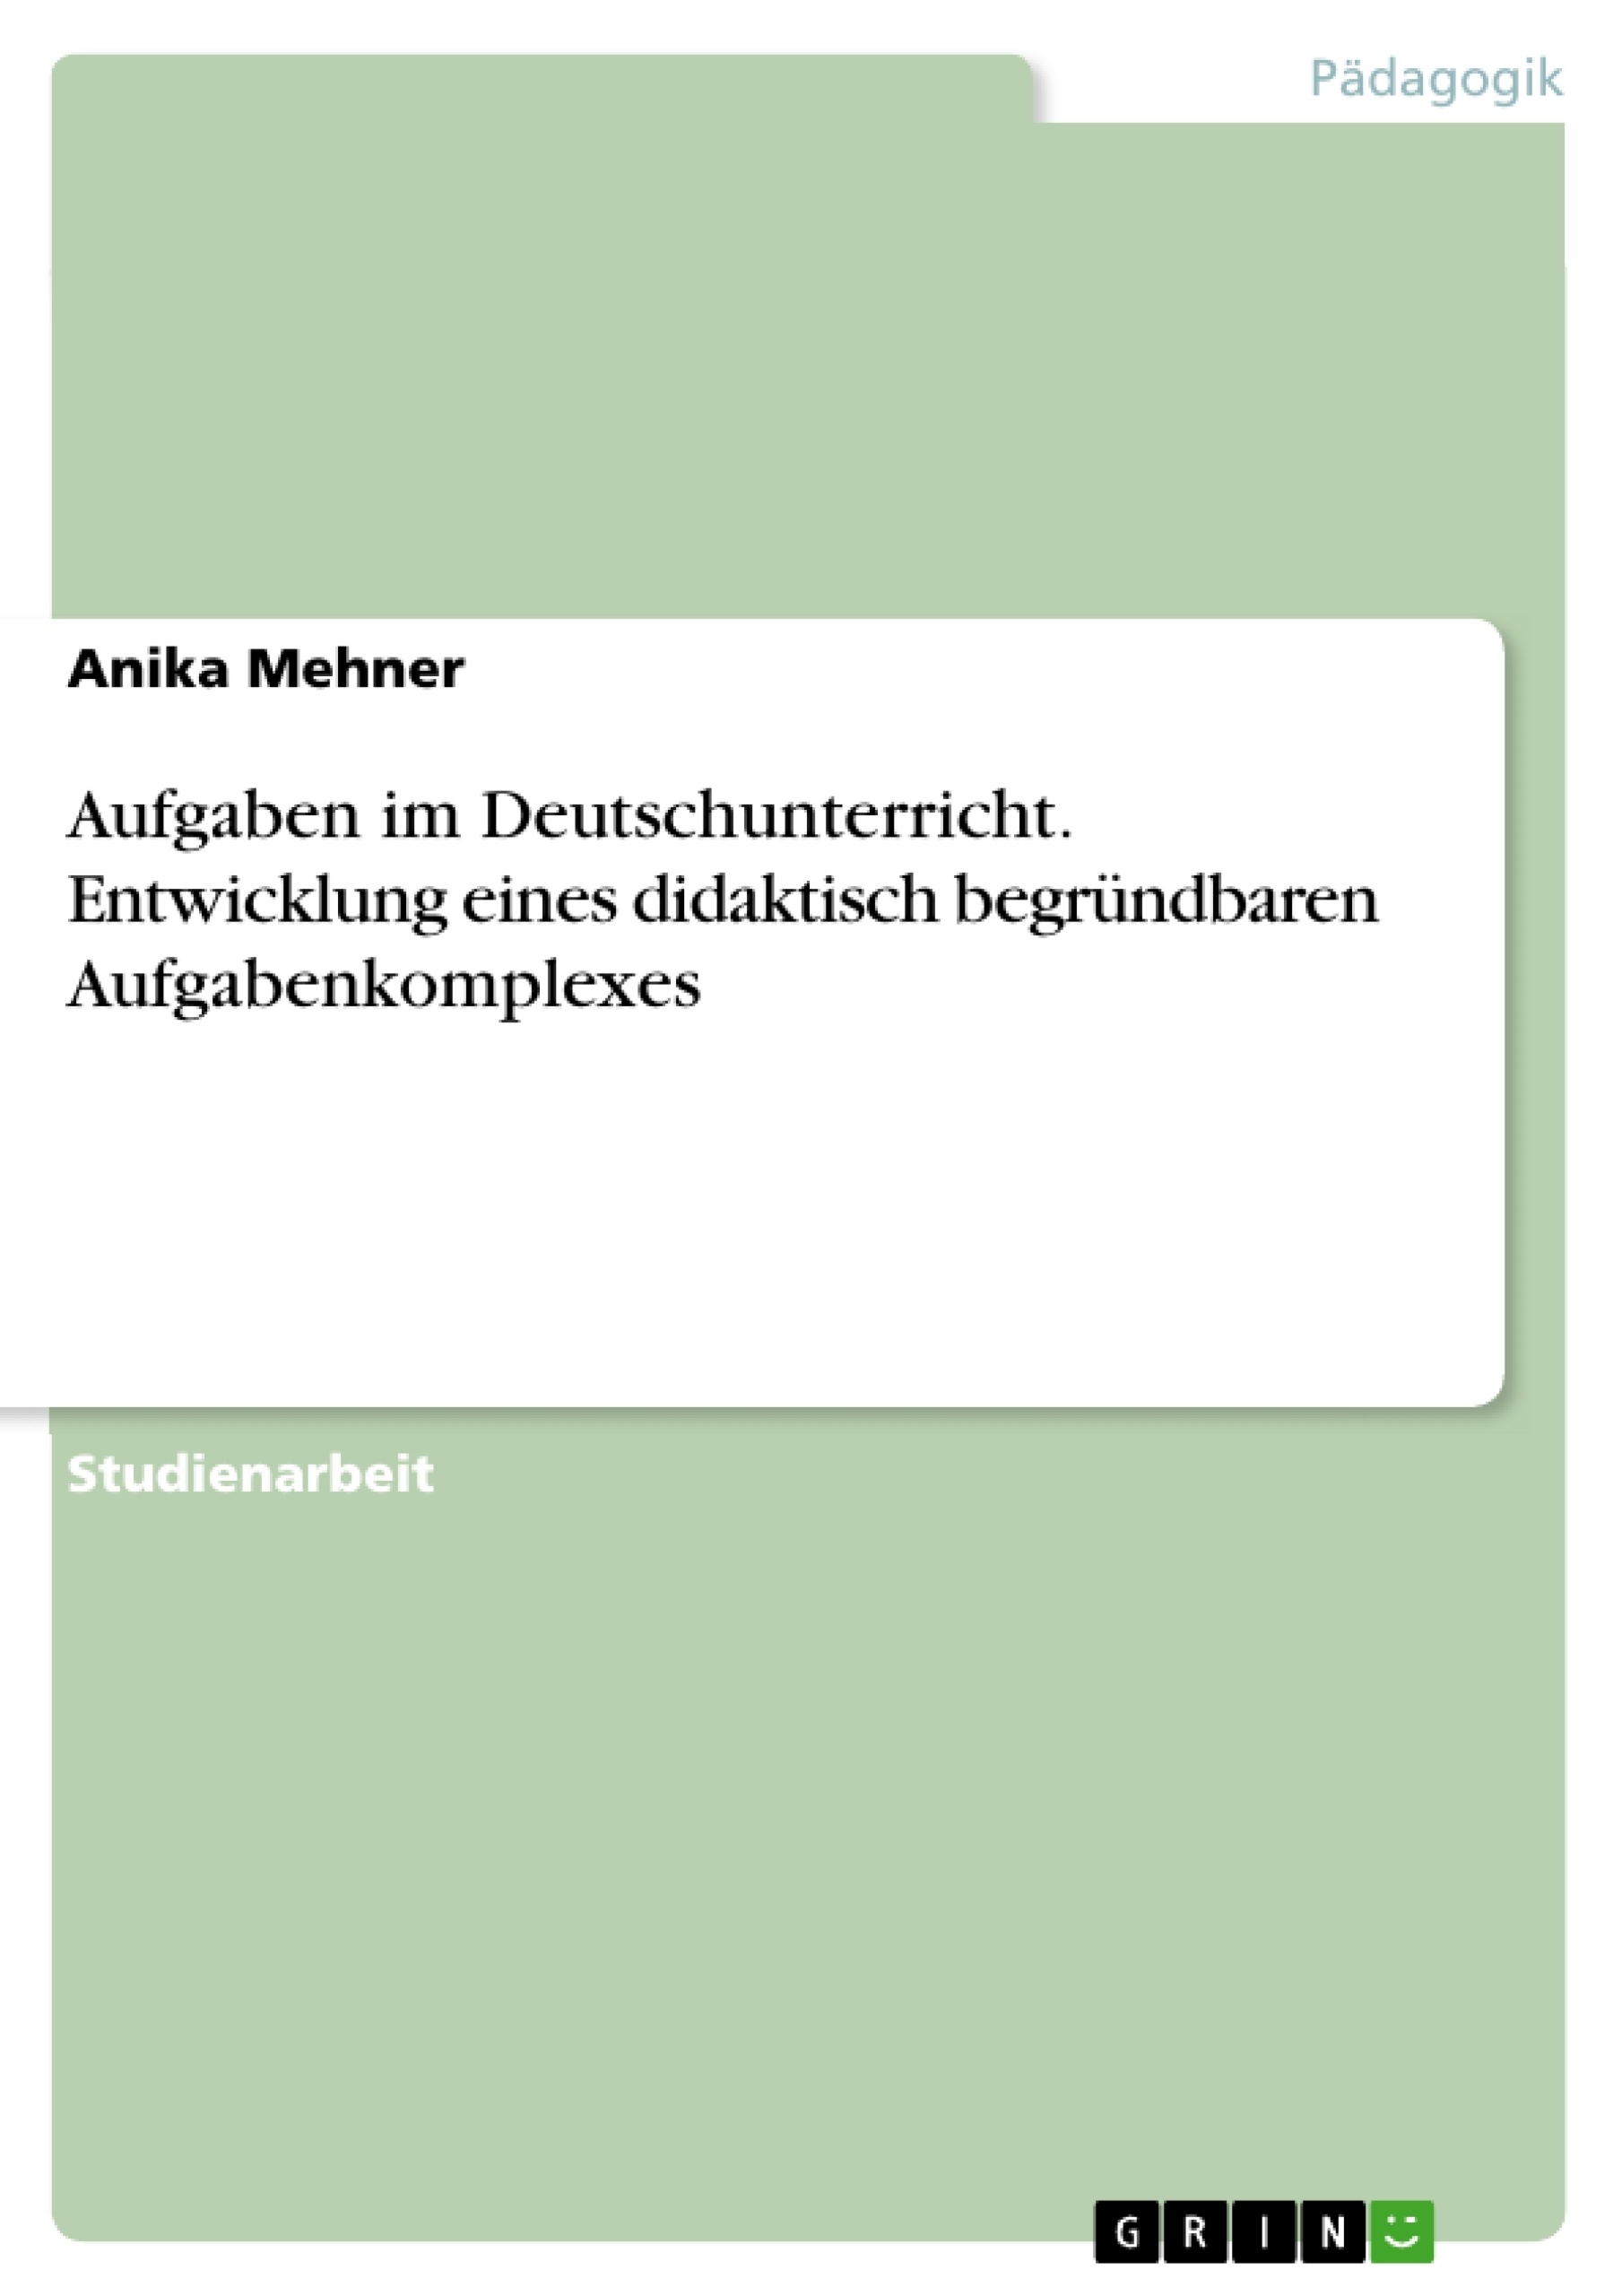 Título: Aufgaben im Deutschunterricht. Entwicklung eines didaktisch begründbaren Aufgabenkomplexes